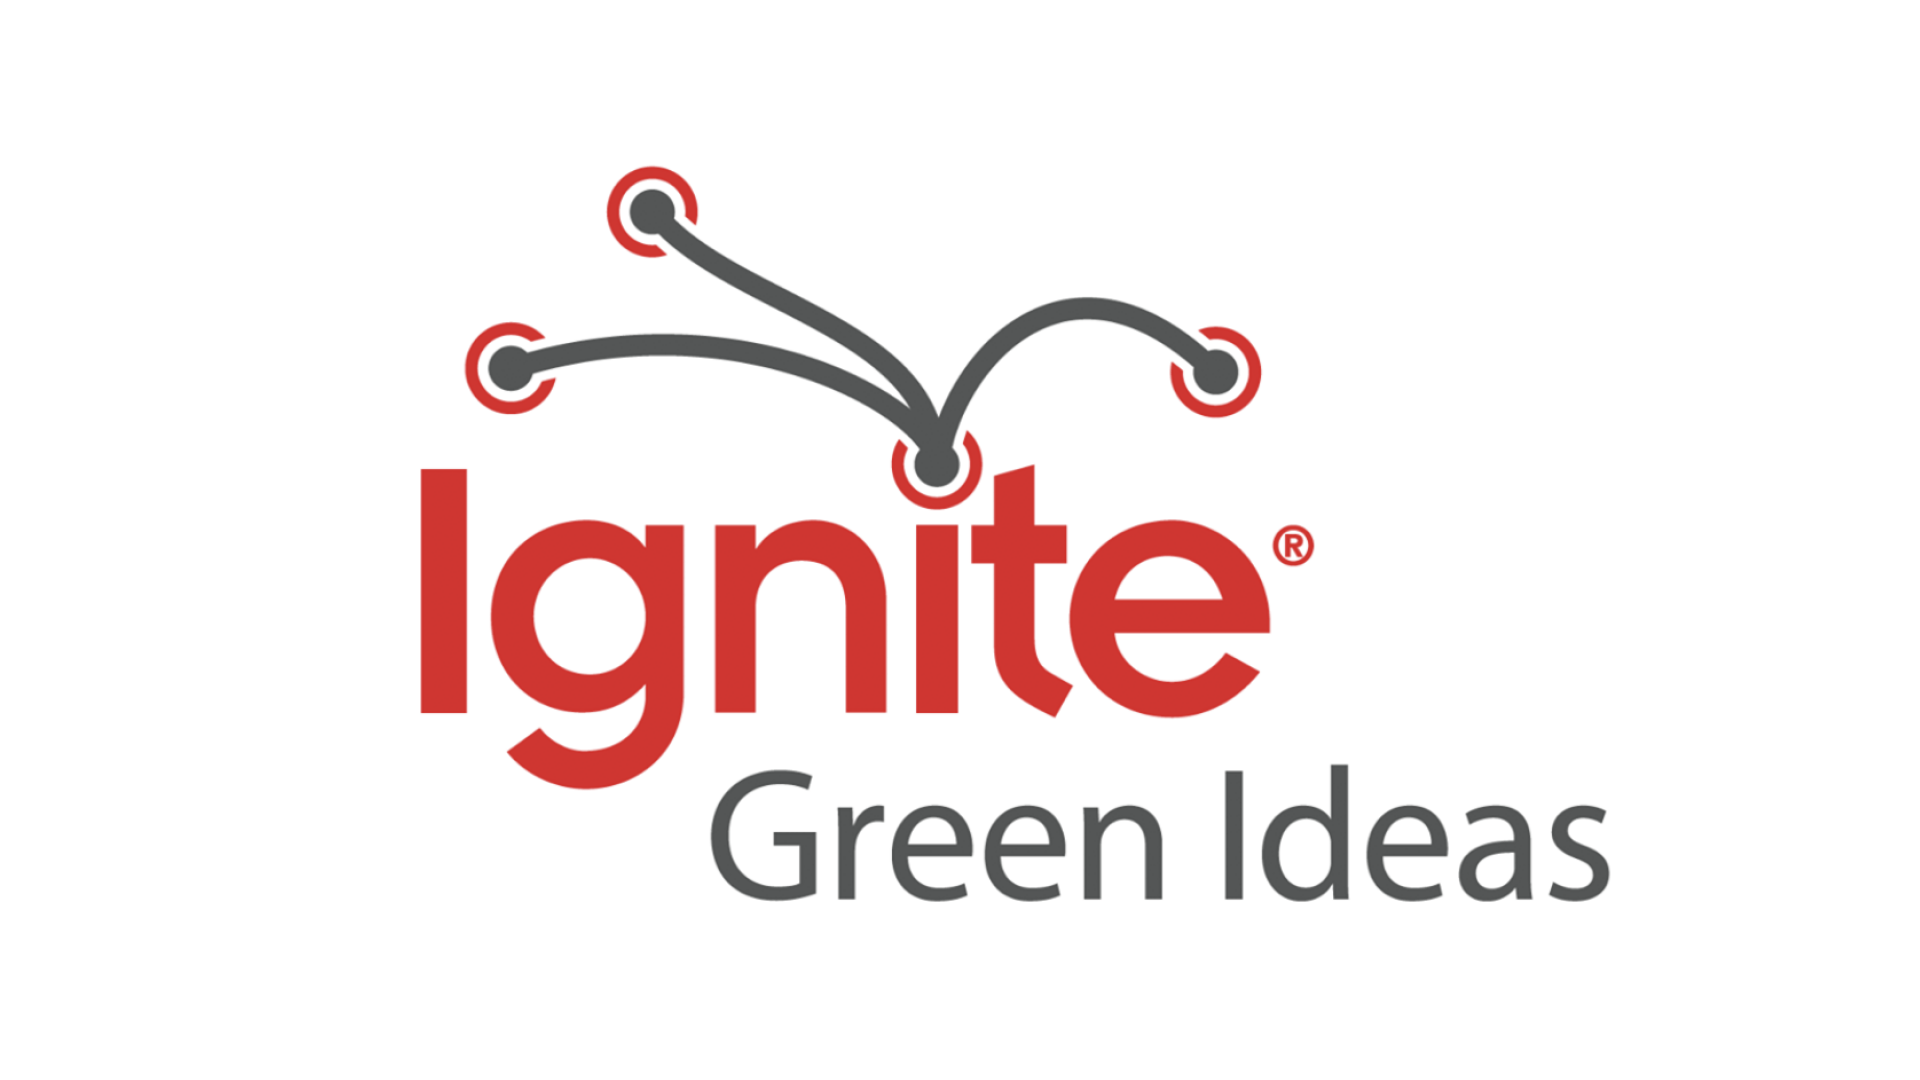 Ignite Green Ideas